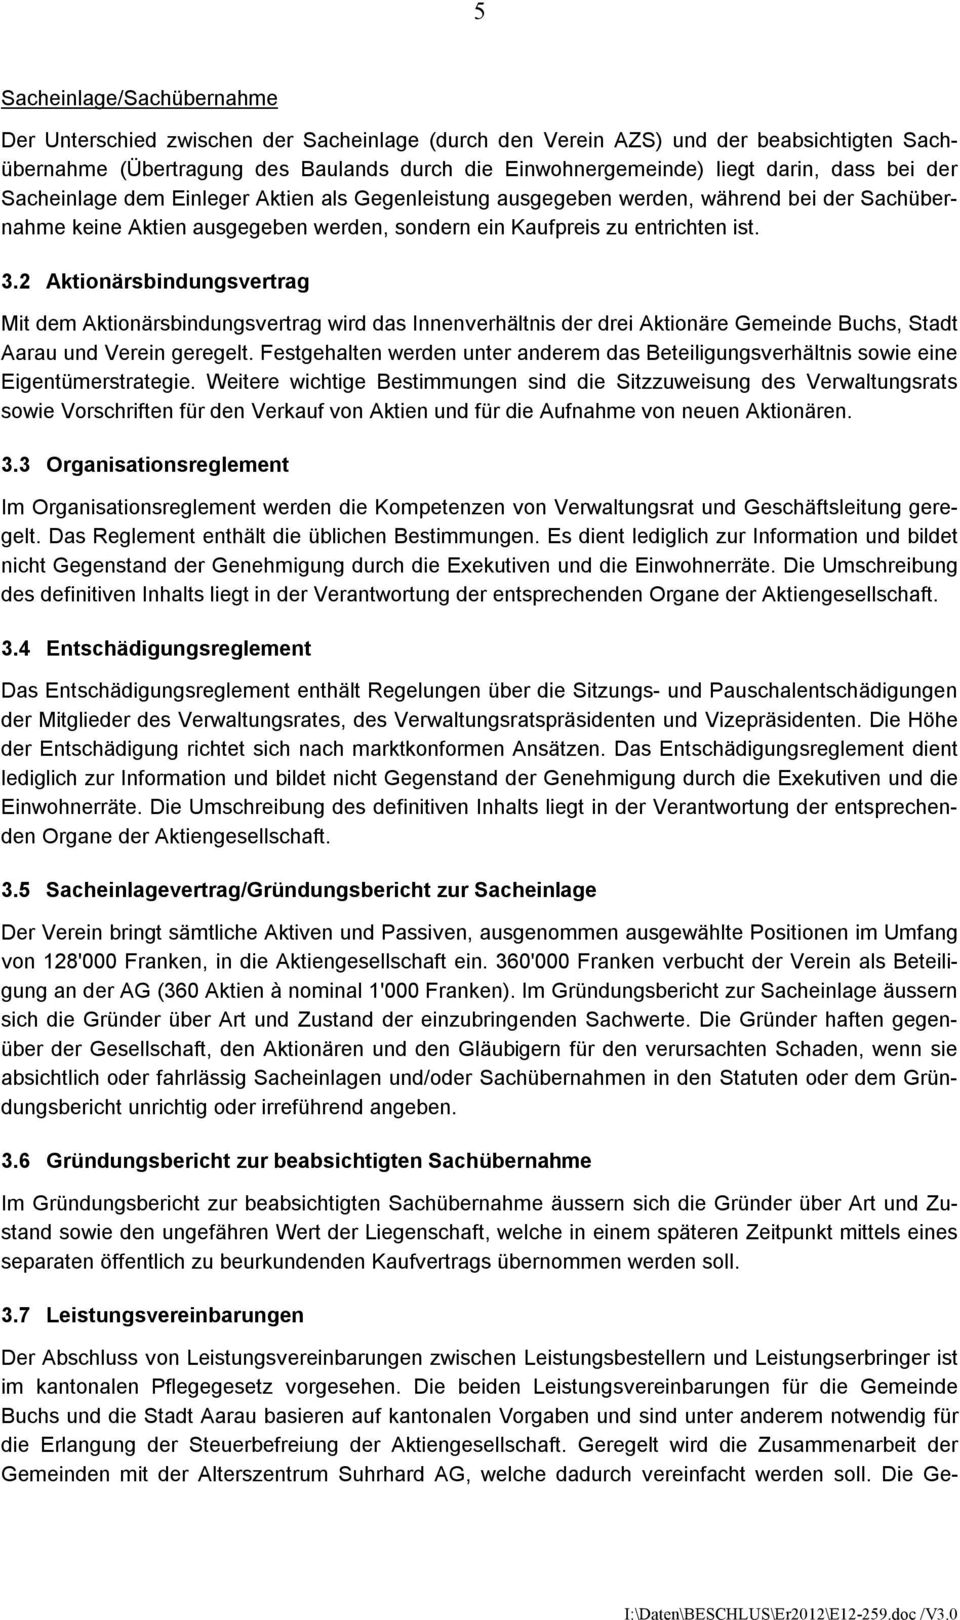 2 Aktionärsbindungsvertrag Mit dem Aktionärsbindungsvertrag wird das Innenverhältnis der drei Aktionäre Gemeinde Buchs, Stadt Aarau und Verein geregelt.